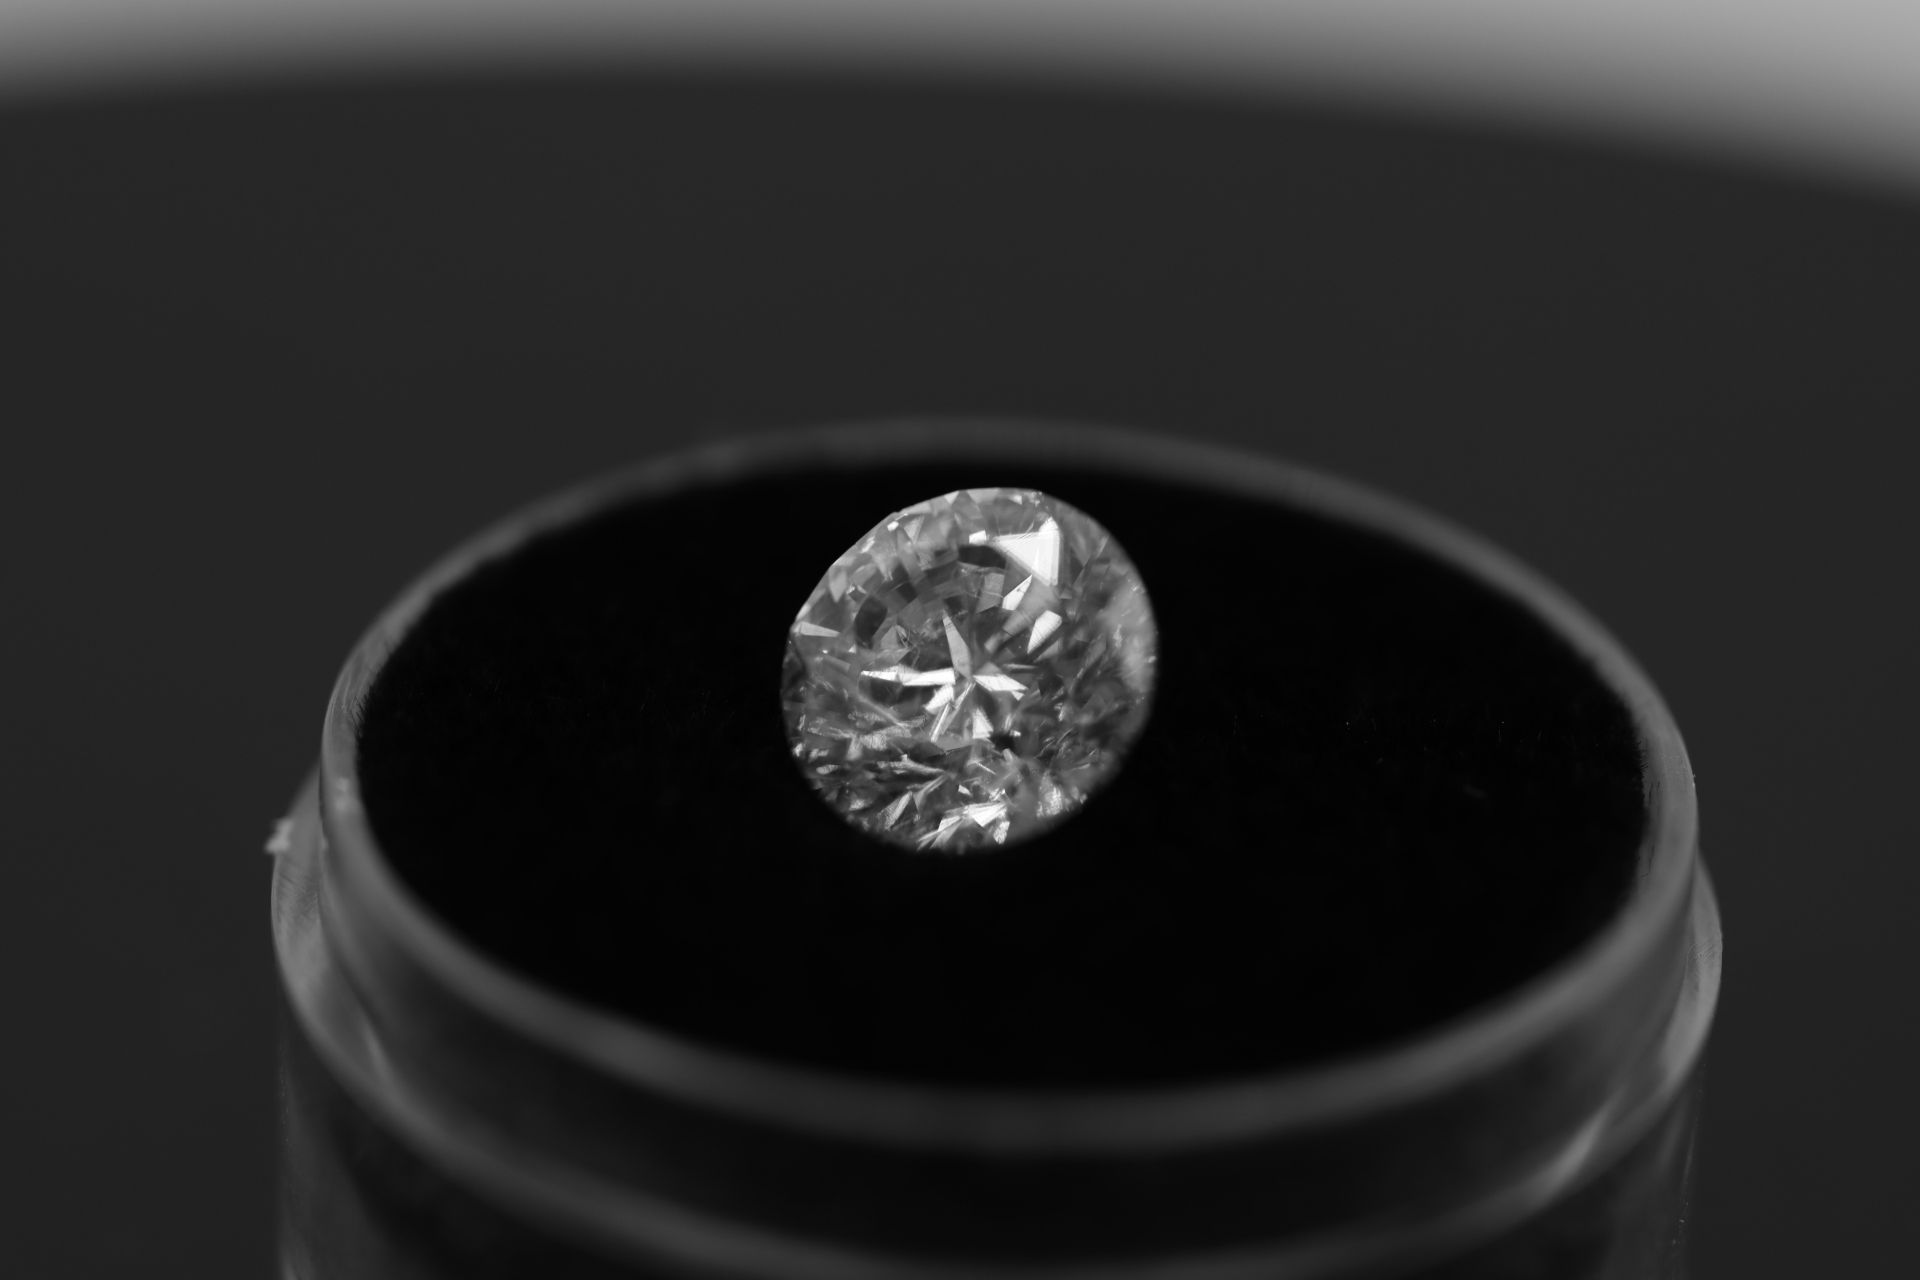 Single - Round Brilliant Cut Natural Diamond 2.07 Carat Colour E Clarity VS2 - DGI 142557706 - Image 14 of 14